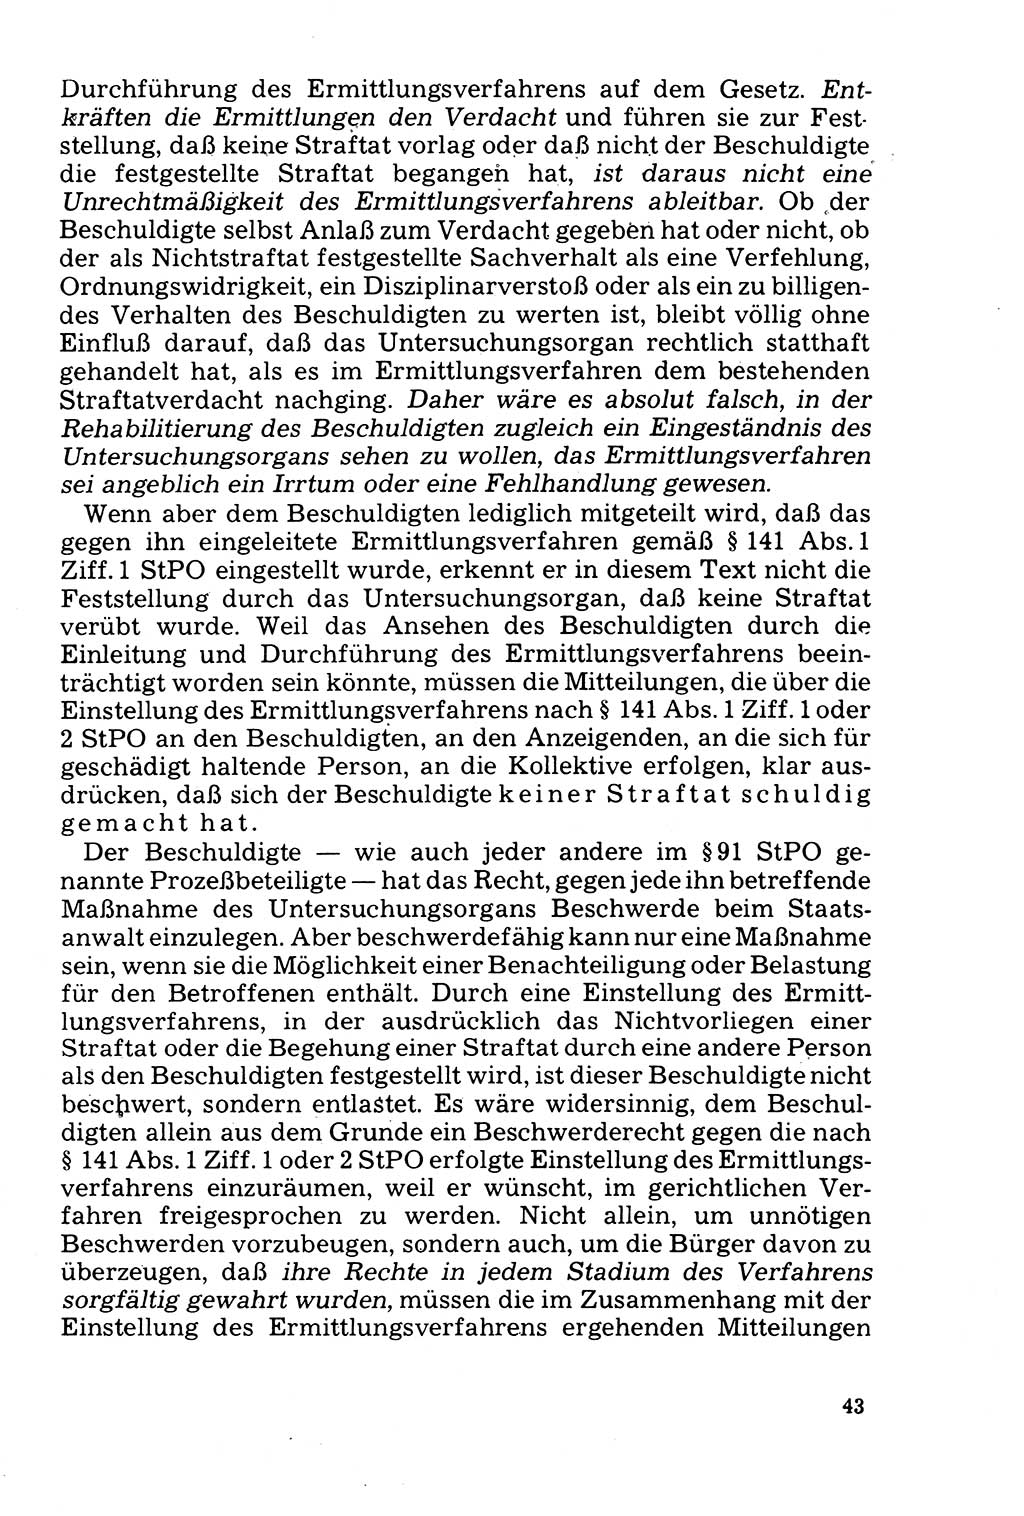 Der Abschluß des Ermittlungsverfahrens [Deutsche Demokratische Republik (DDR)] 1978, Seite 43 (Abschl. EV DDR 1978, S. 43)